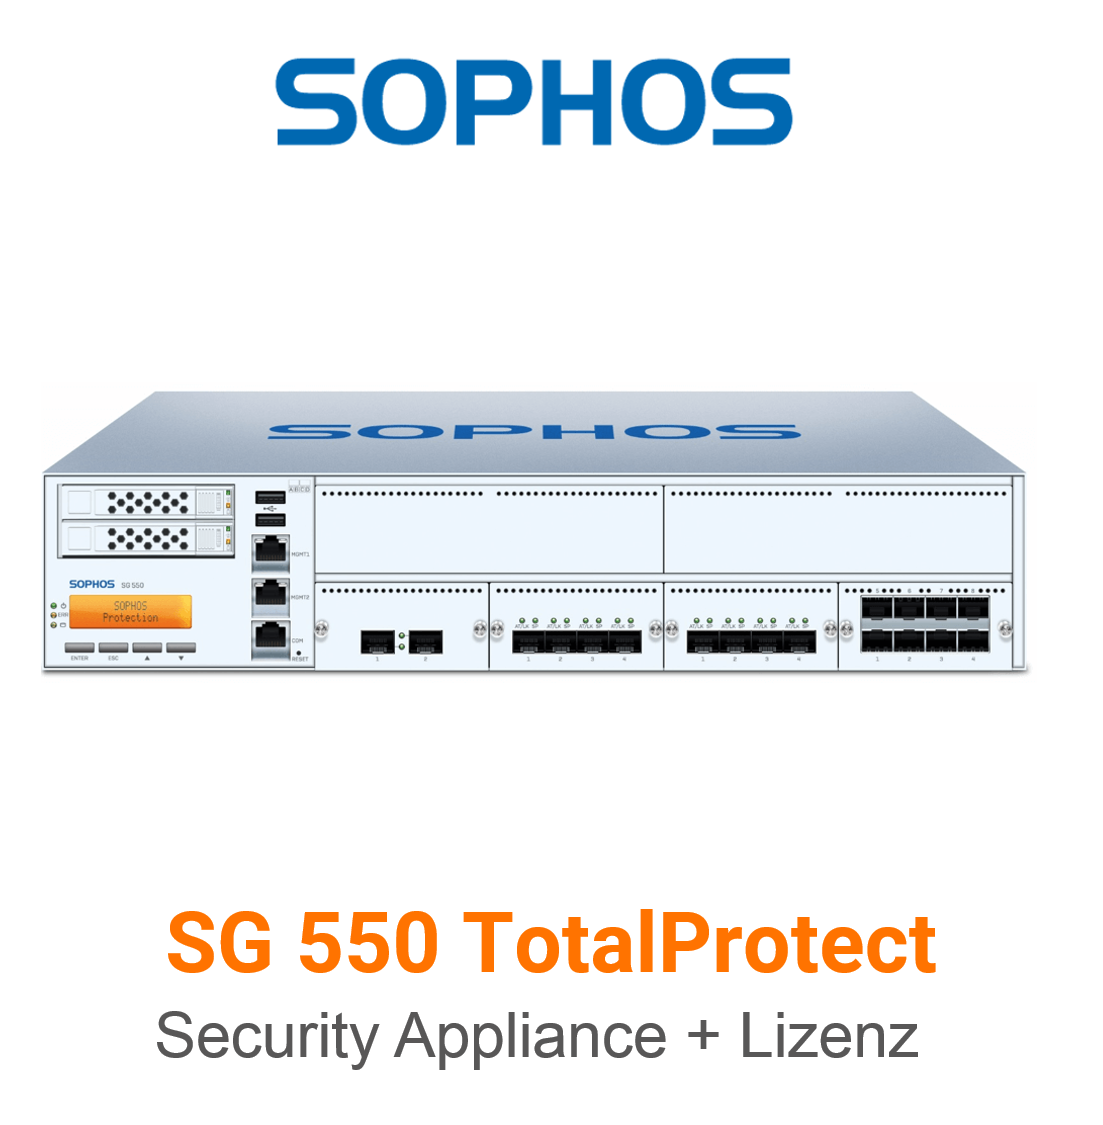 Sophos SG 550 TotalProtect Bundle (Hardware + Lizenz) (End of Sale/Life)